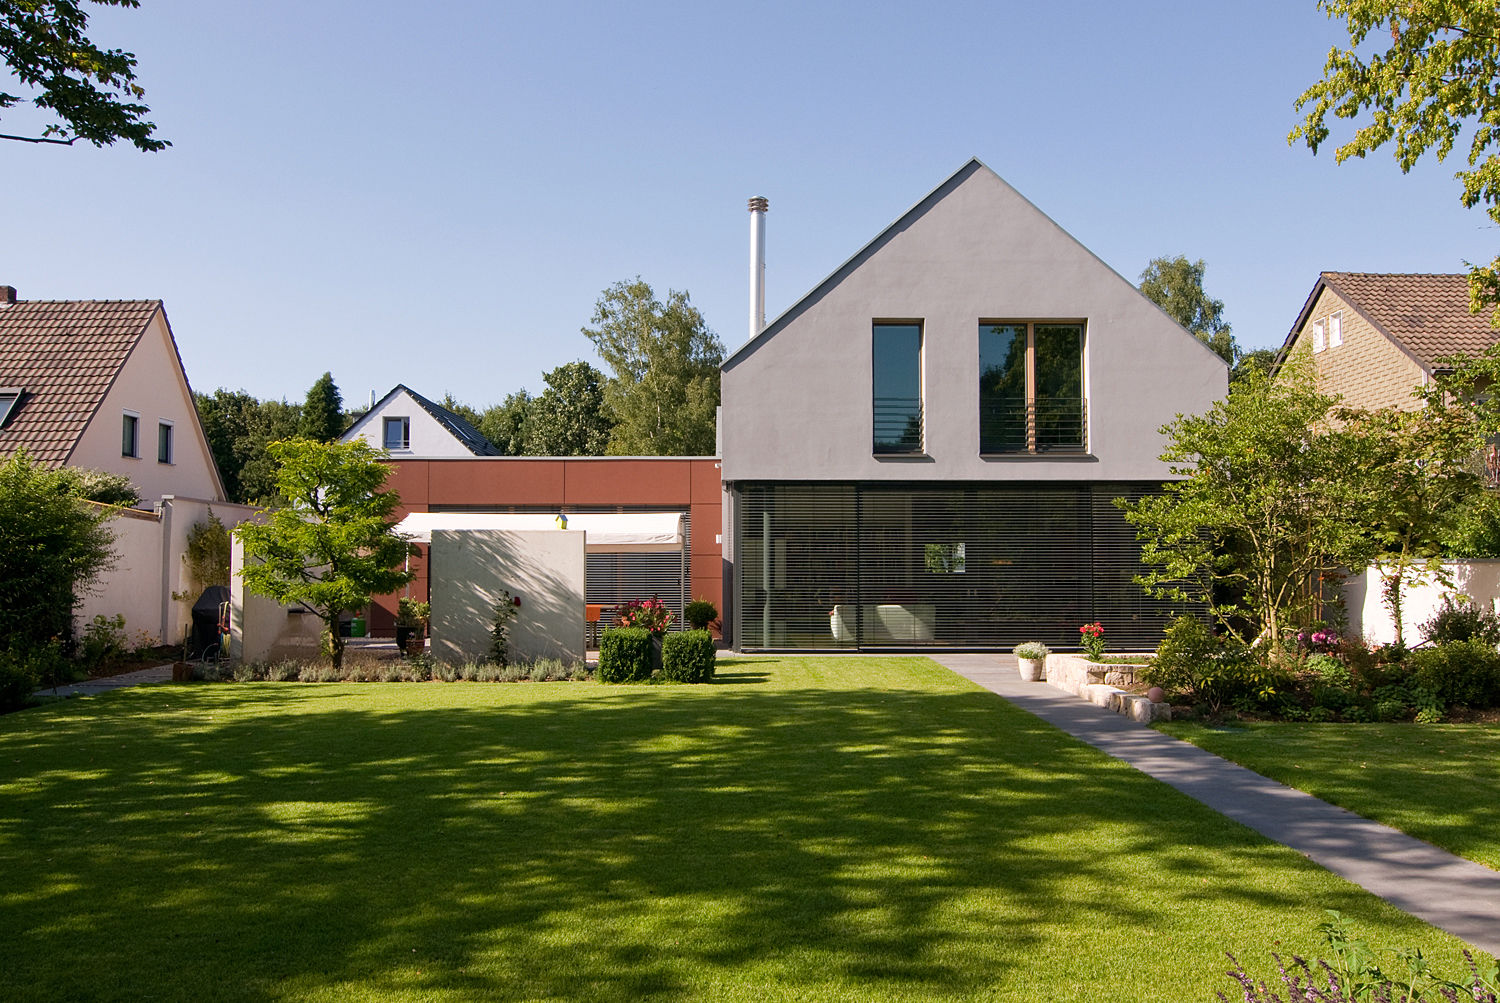 Modernes Wohnhaus mit Satteldach in Köln, wirges-klein architekten wirges-klein architekten منازل